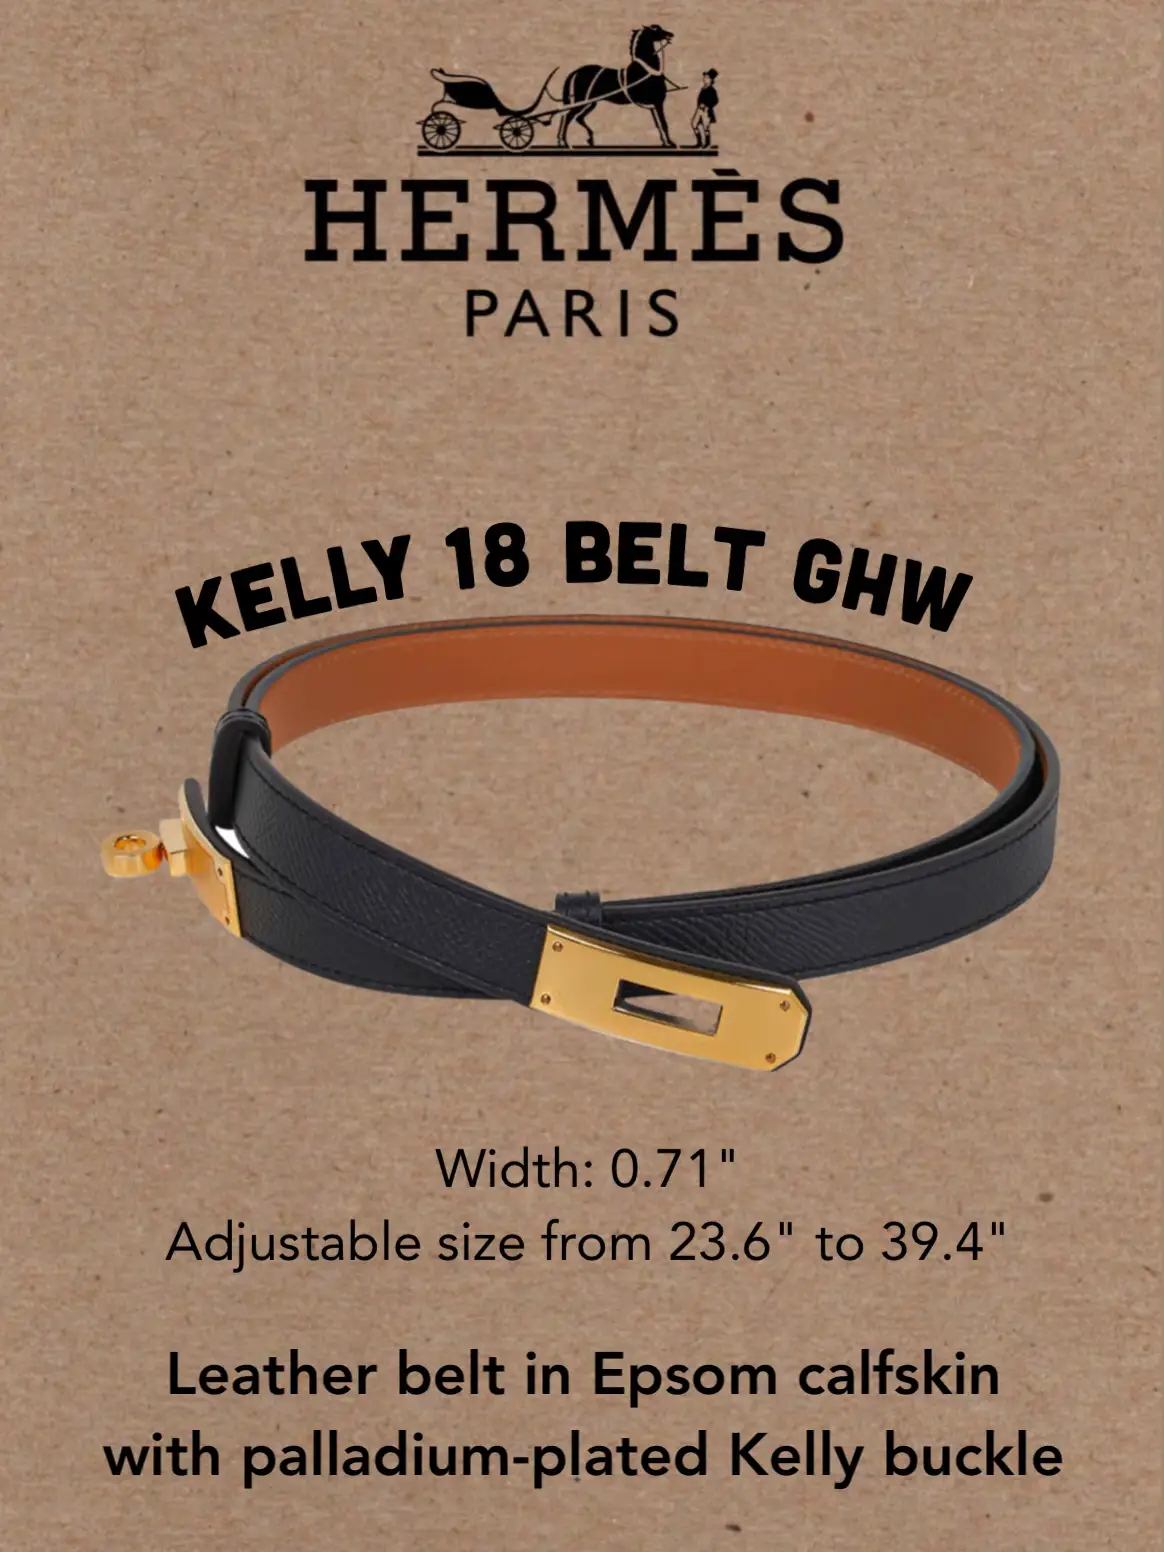 Kelly 18 belt